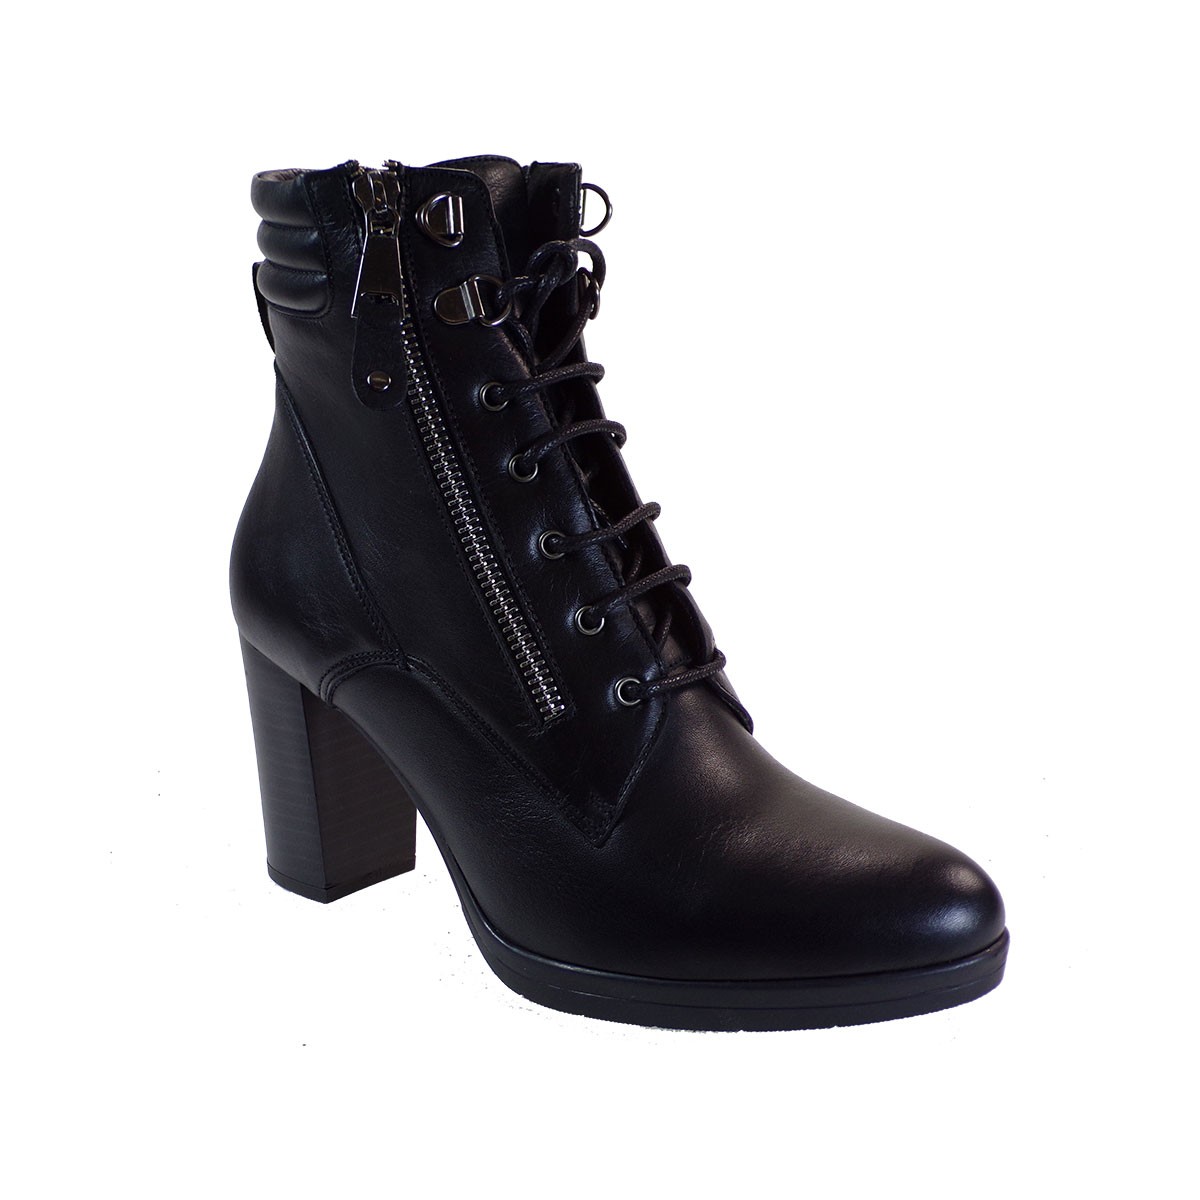 Fardoulis Shoes Γυναικεία Παπούτσια Μποτάκια 1103ΠΕΡ Μαύρο Δέρμα